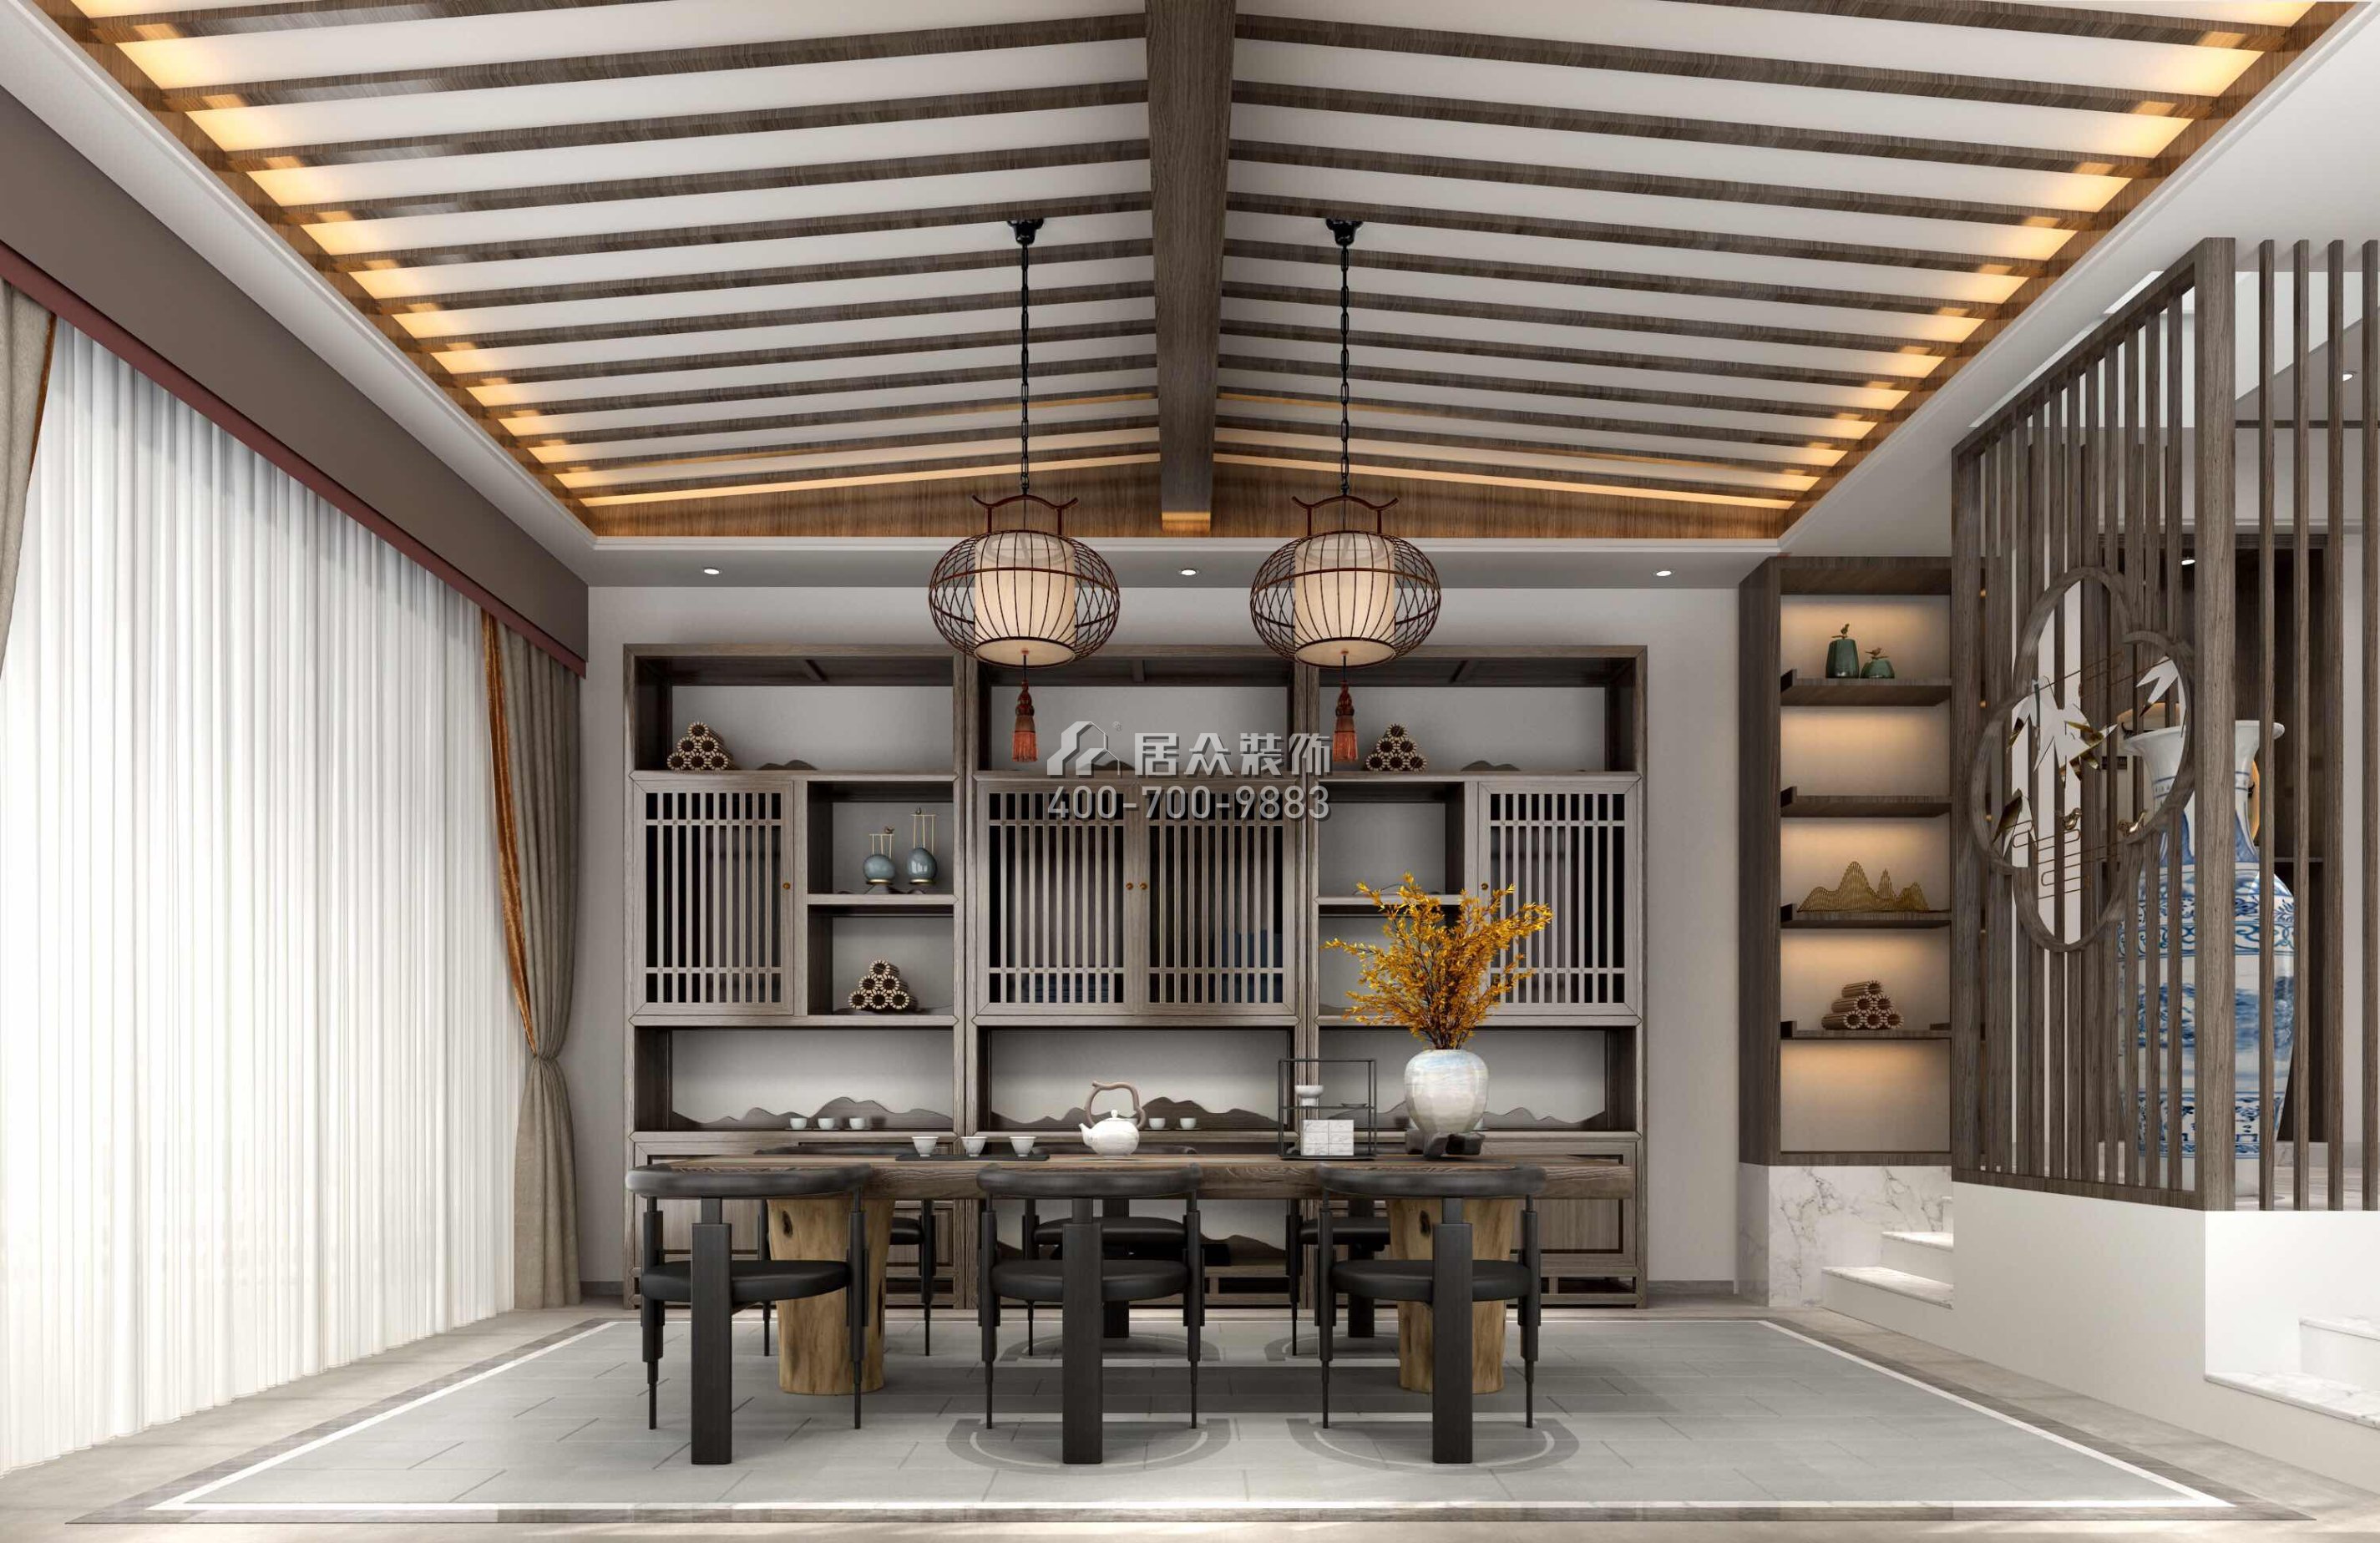 银湖山庄300平方米中式风格别墅户型茶室装修效果图